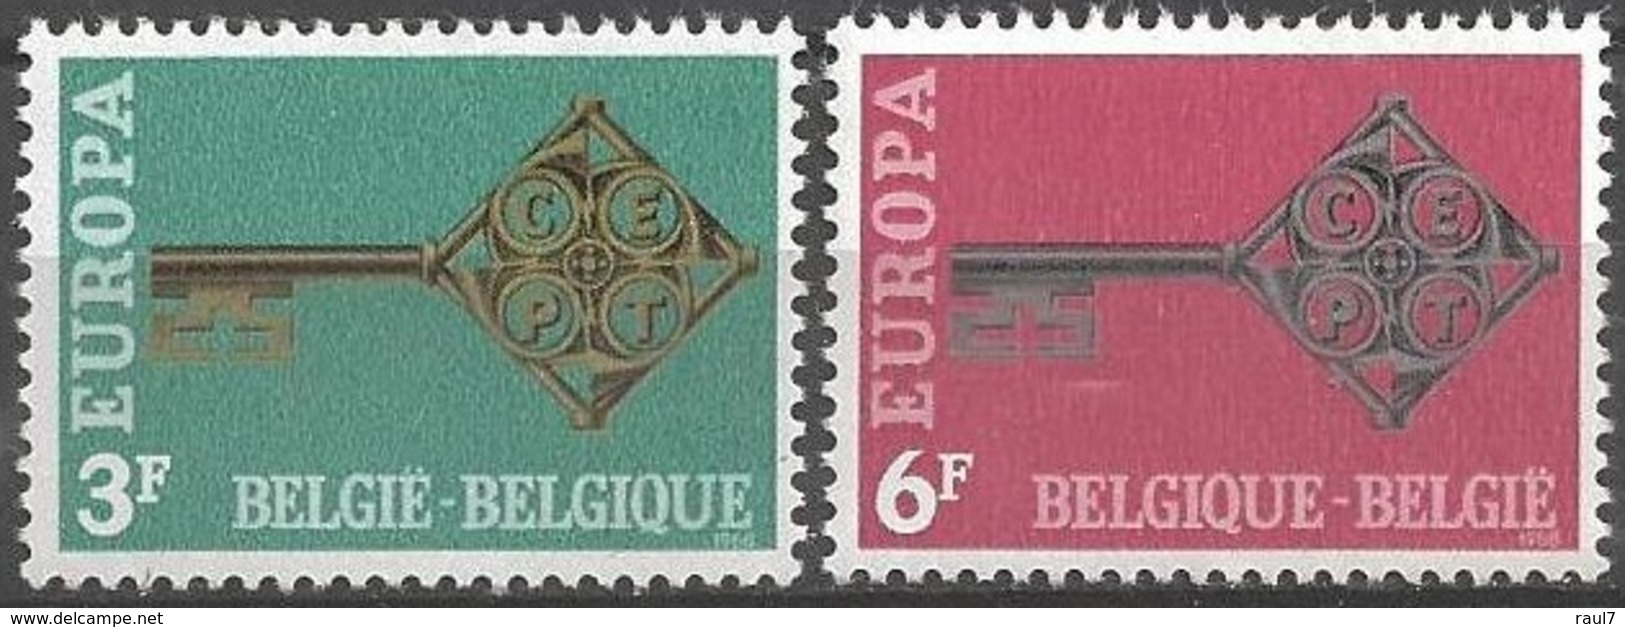 EUROPA - CEPT 1968 - Belgique - 2 Val Neufs // Mnh - 1968